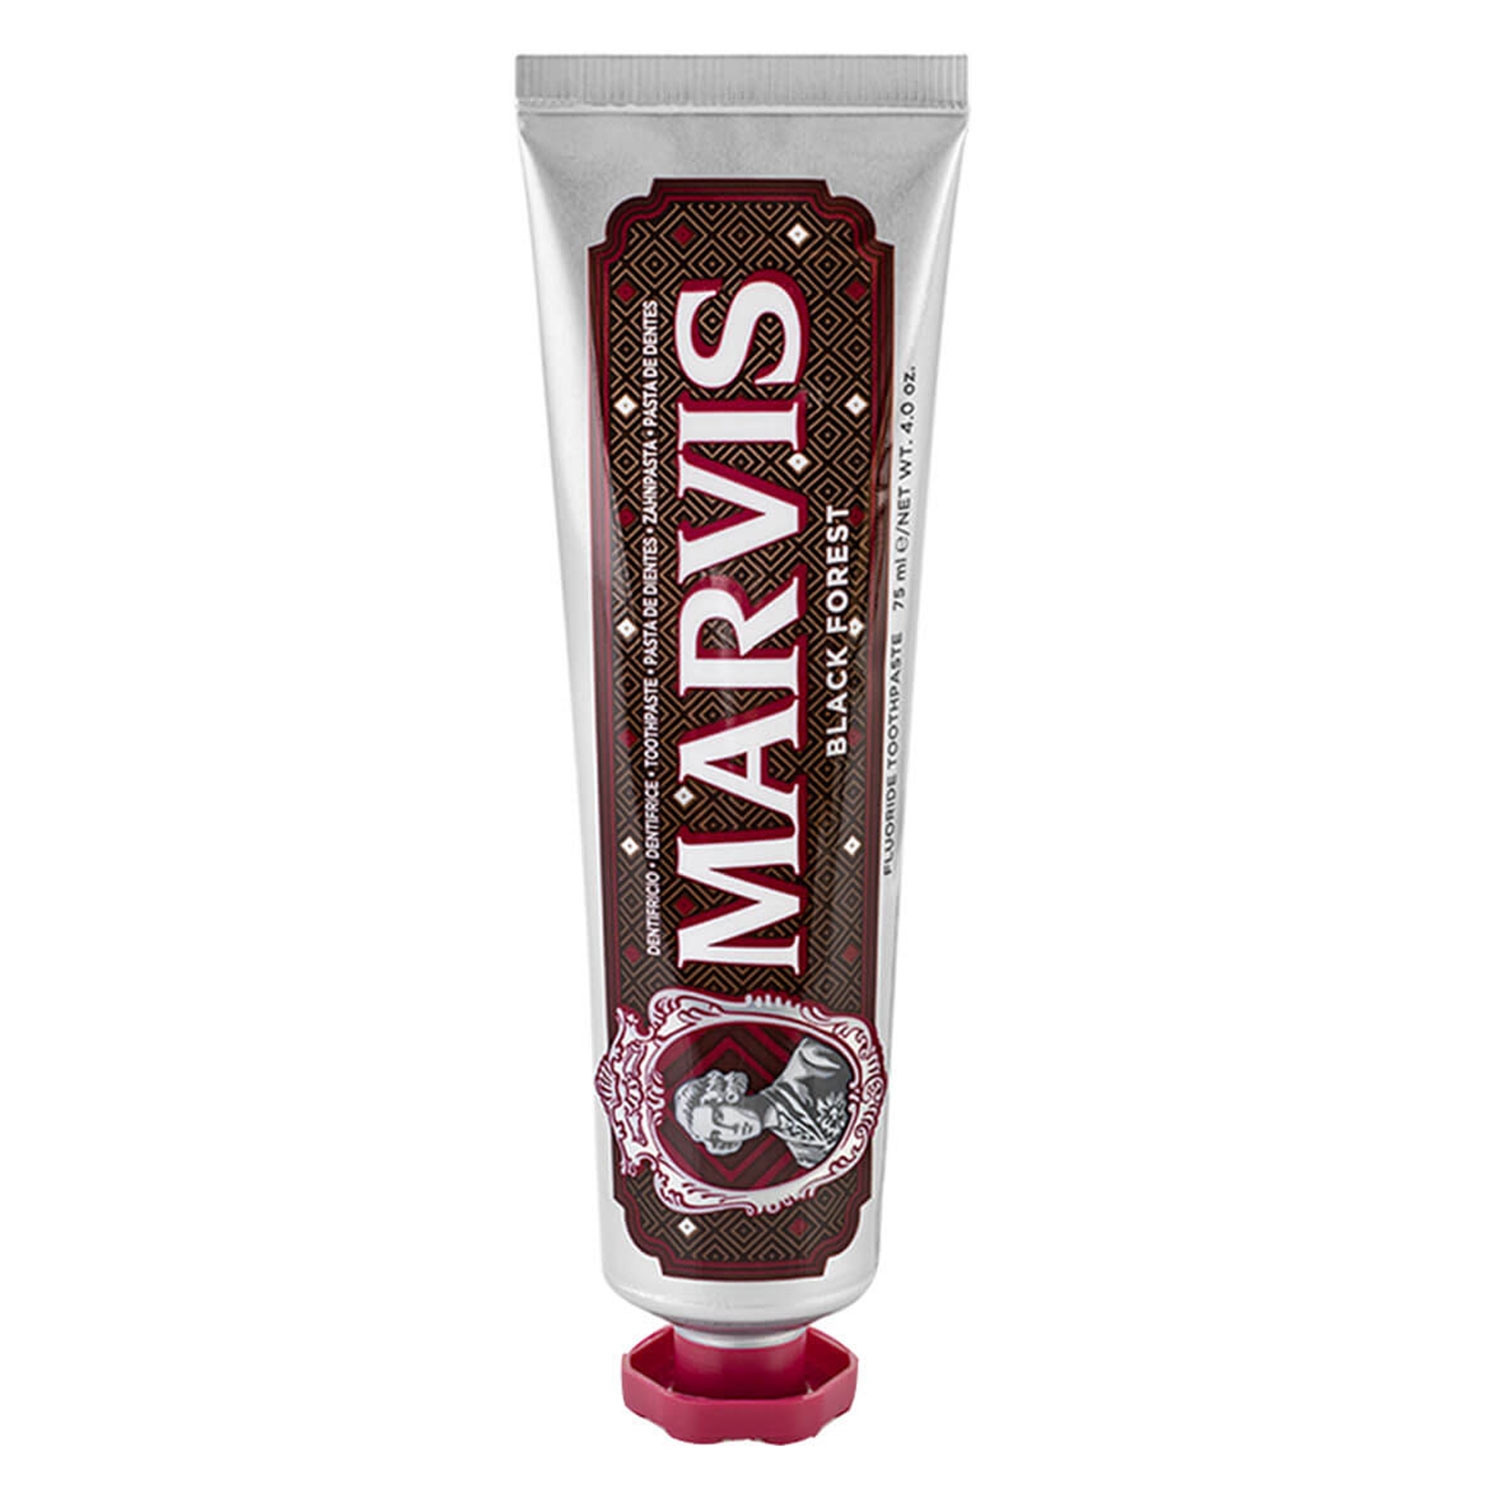 Produktbild von Marvis - Black Forest Toothpaste